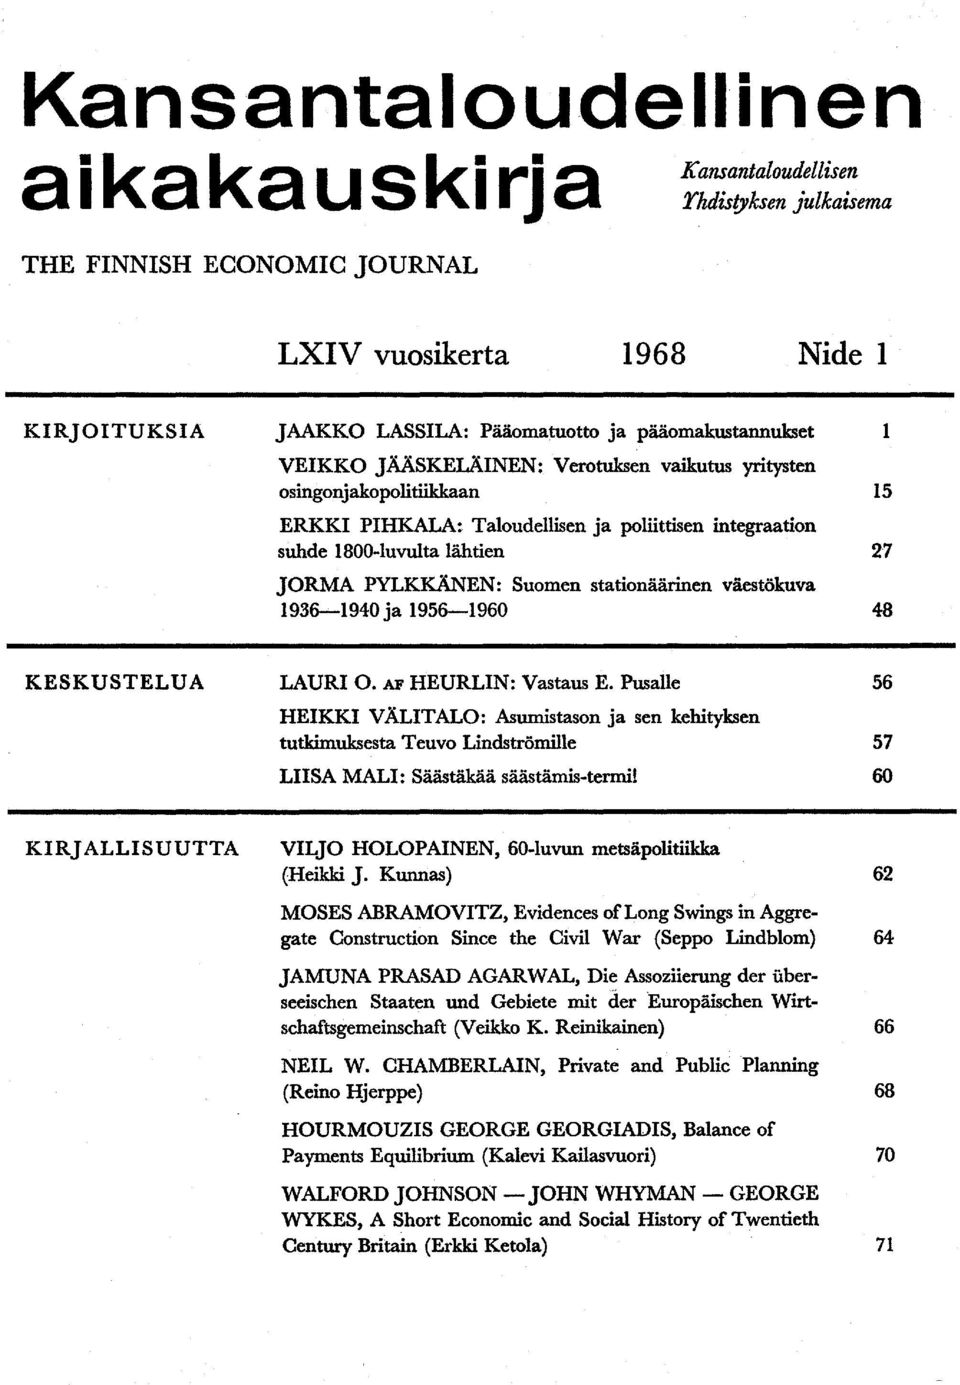 Suomen stationäärinen väestökuva 1936-1940 ja 1956-1960 48 1 15 27 KESKUSTELUA LAURI 0. AF HEURLIN: Vastaus E.